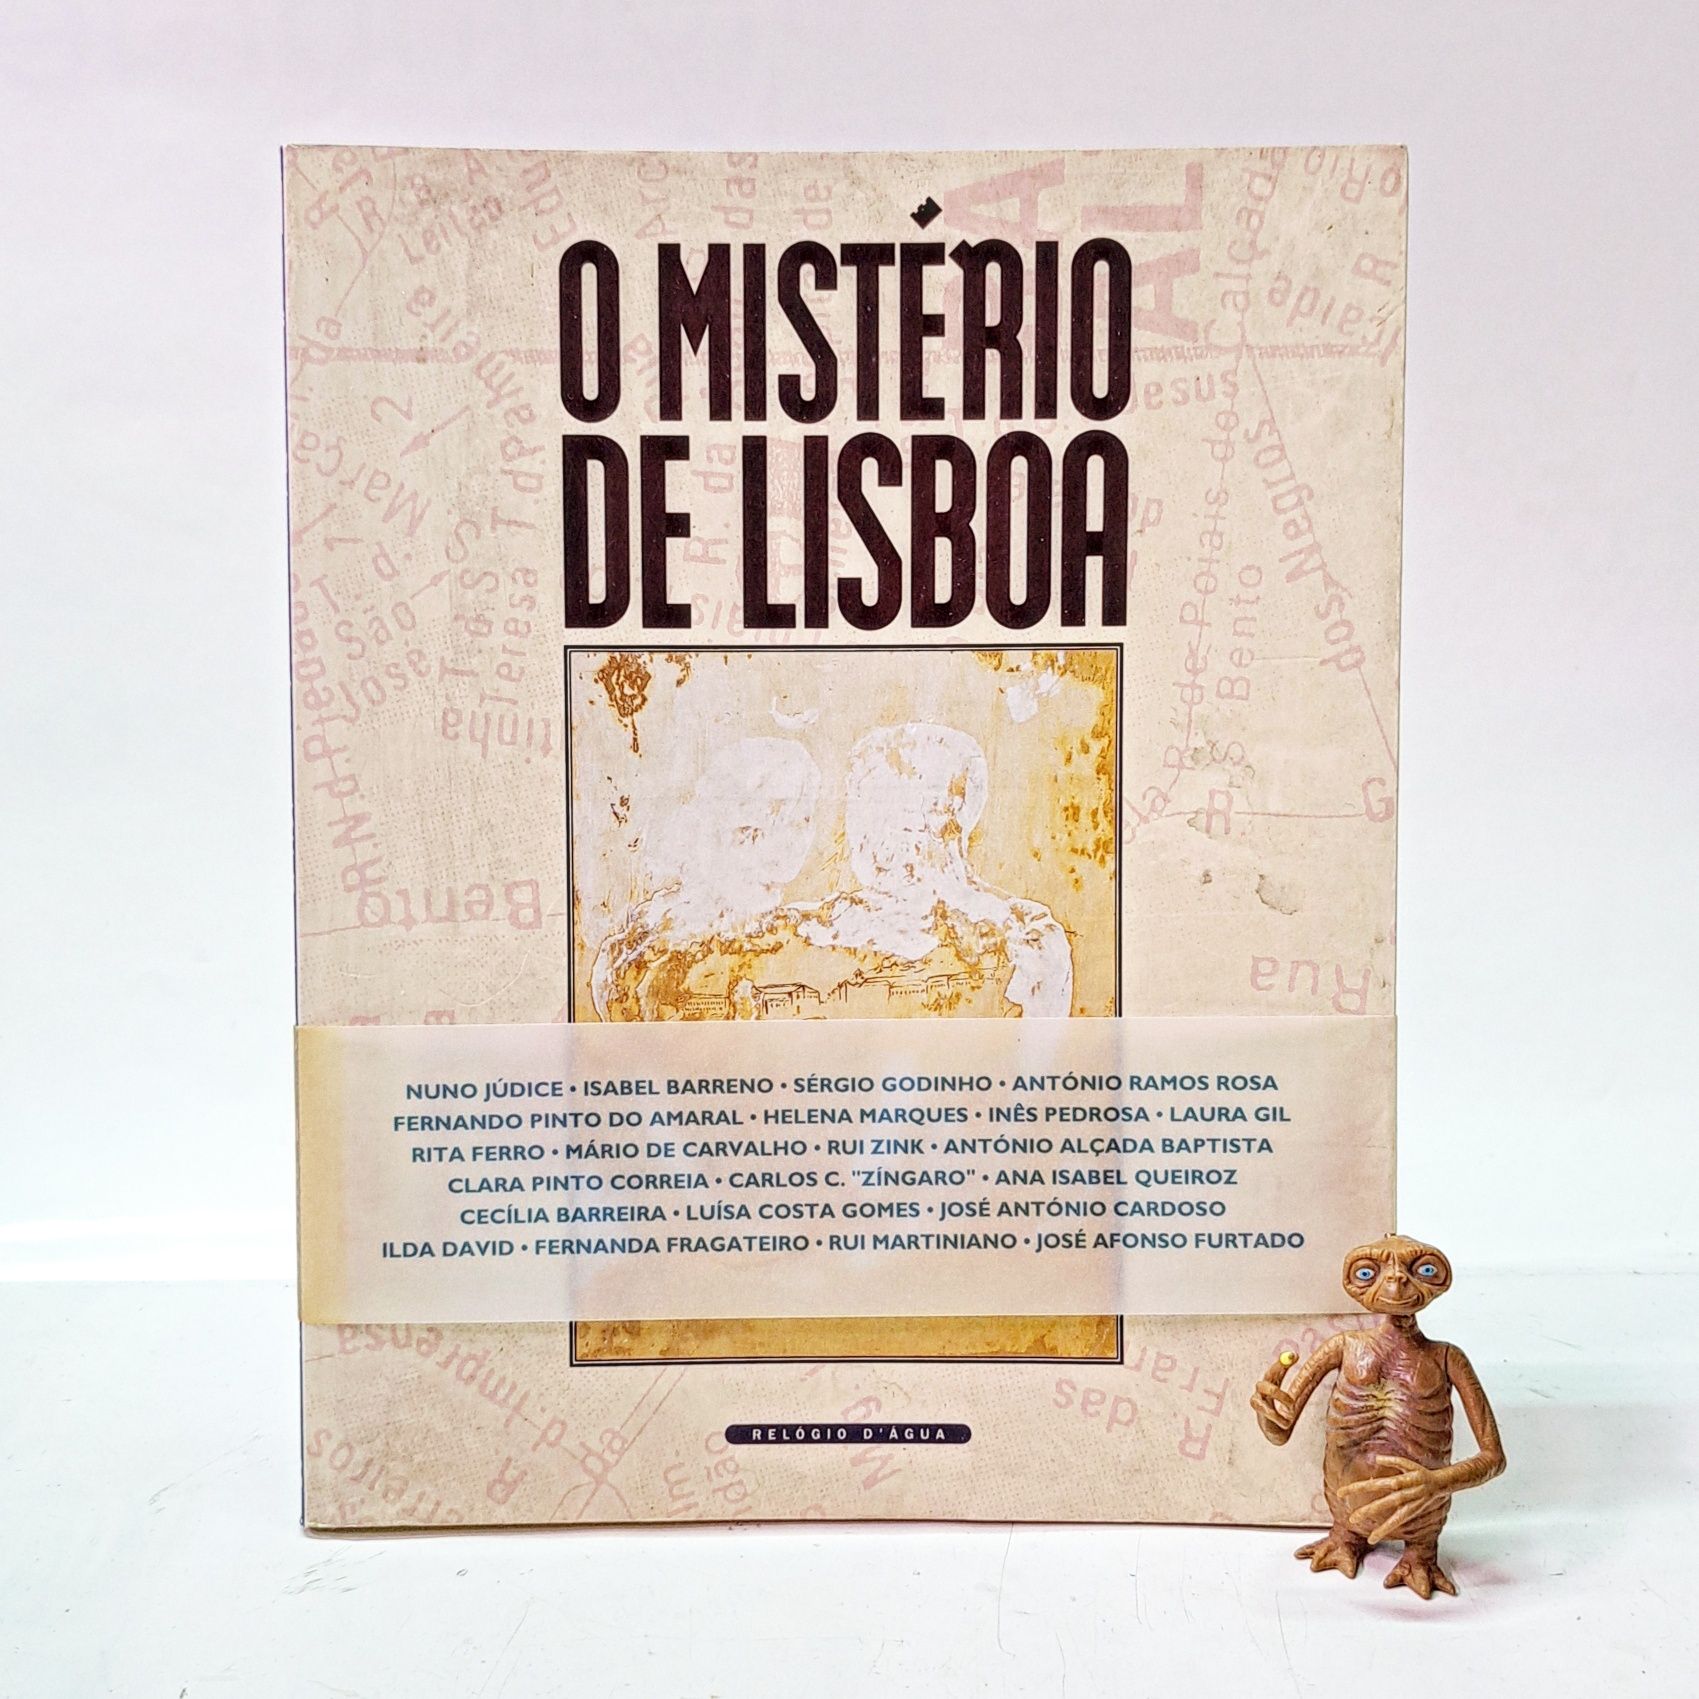 O Mistério de Lisboa 

8,50 €

Edições Relógio d'Água / 1993